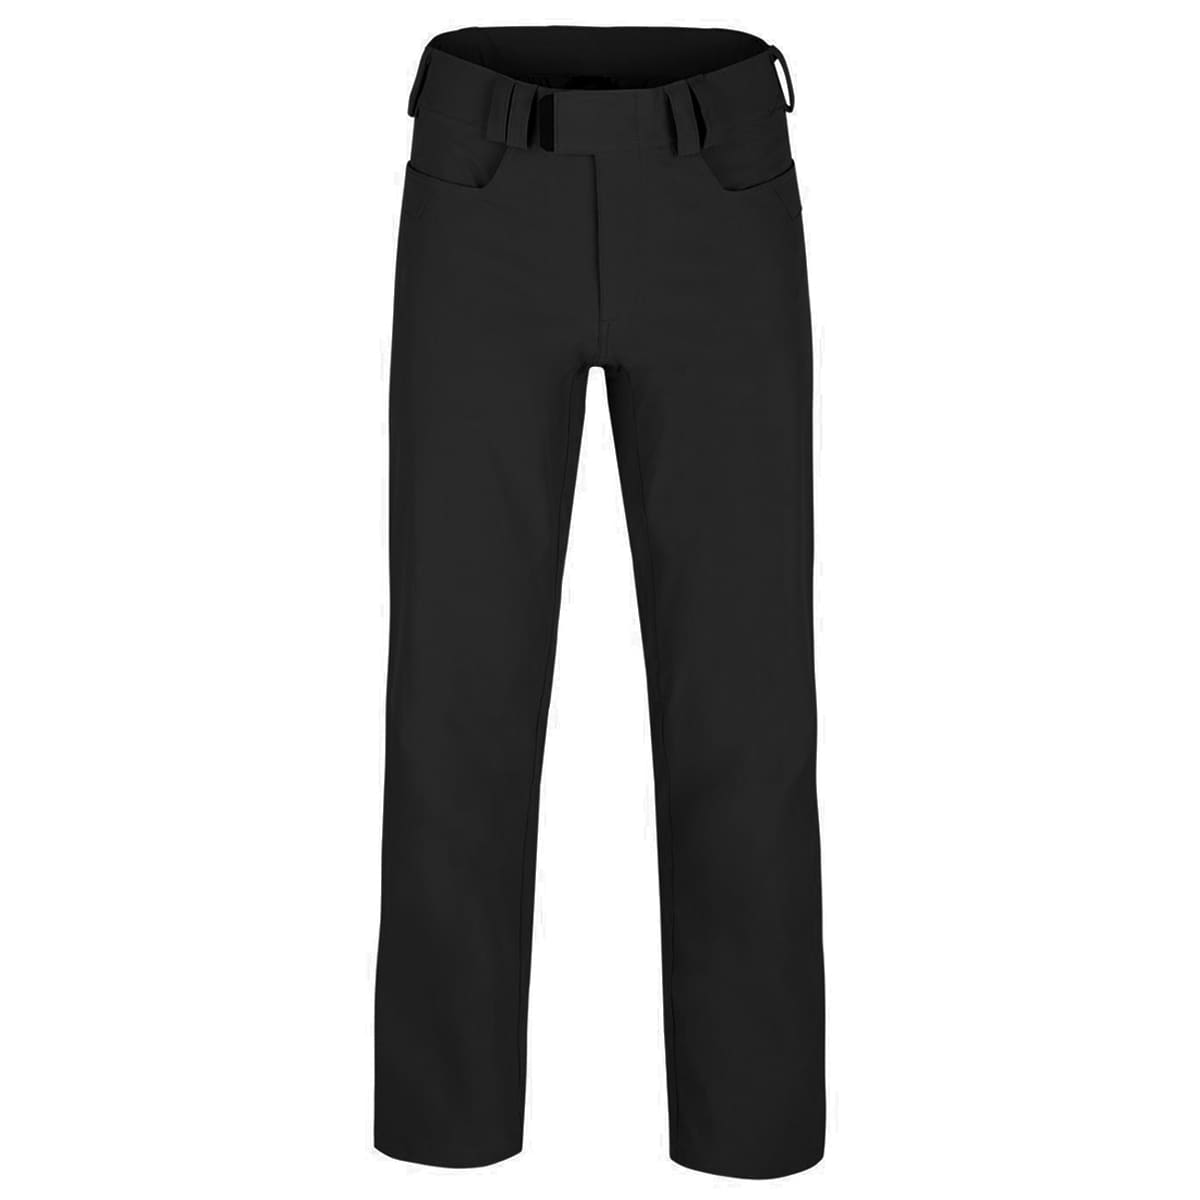 Spodnie Helikon CTP VersaStretch Lite - Black 